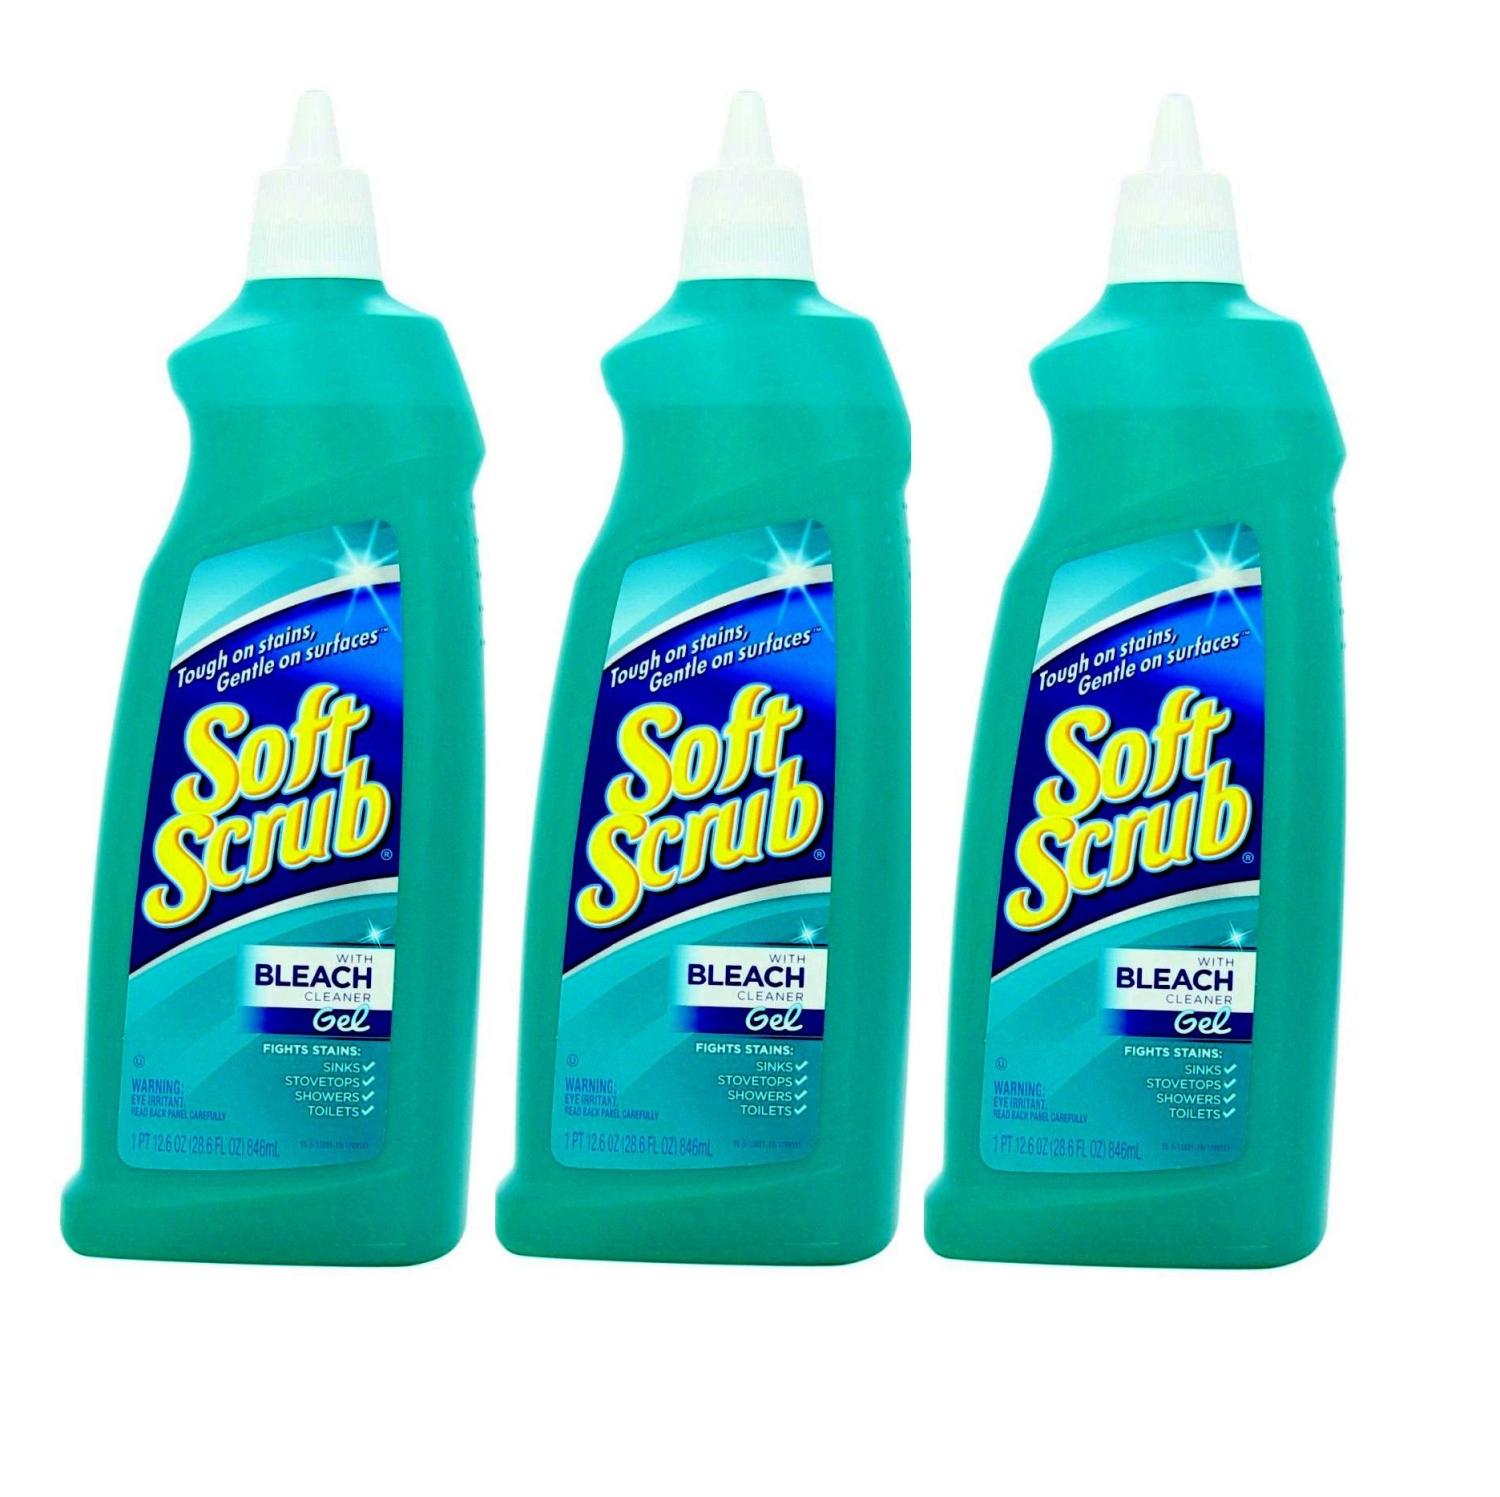 Soft Scrub with Bleach Cleaner Gel, 28.6 Fluid Ounces